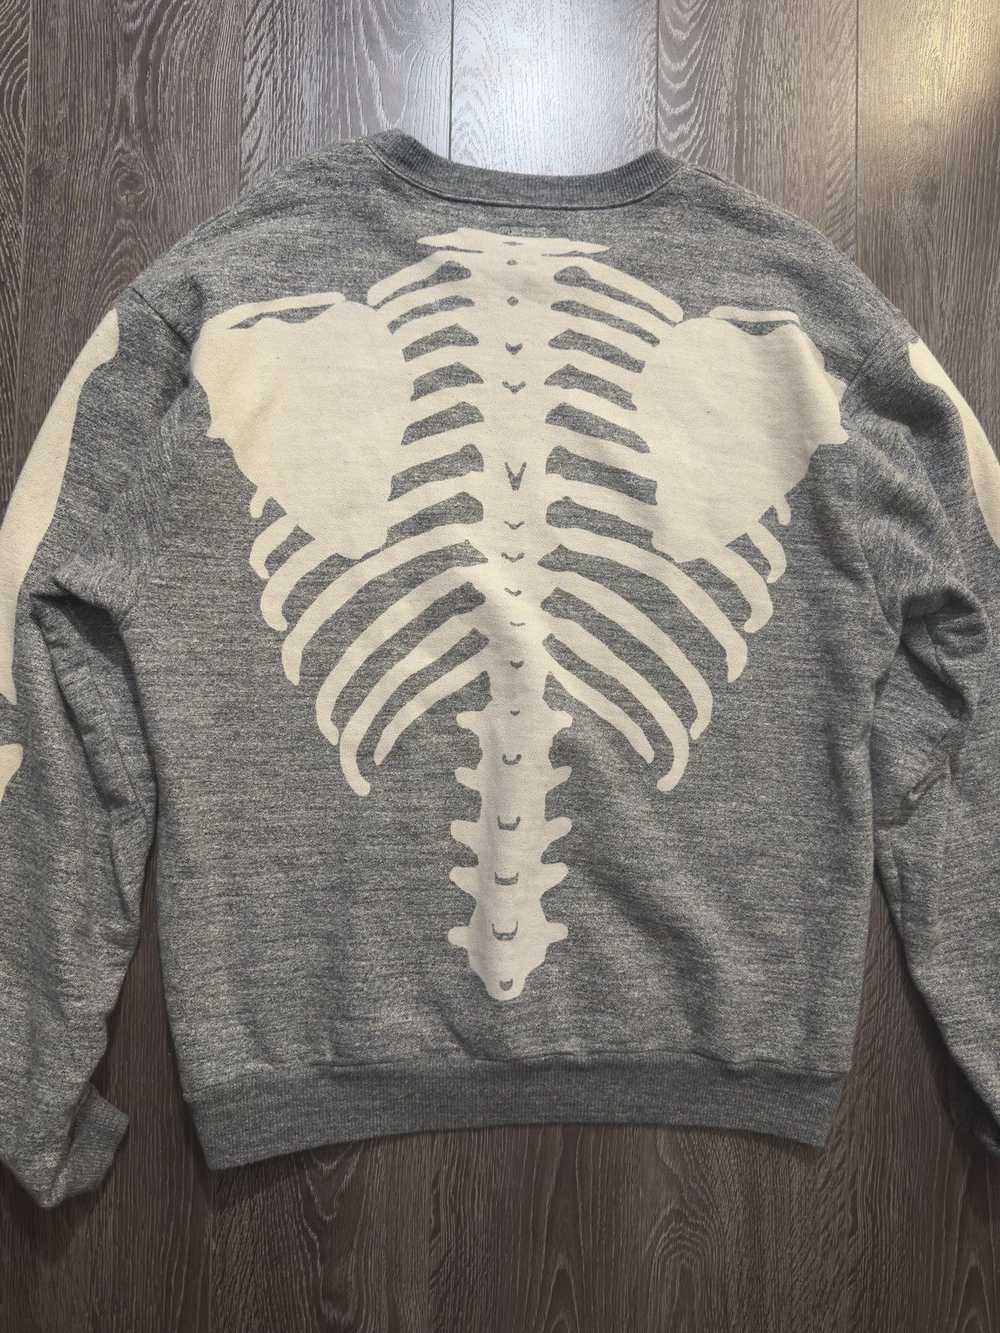 Kapital Kapital Skeleton Sweater - image 3